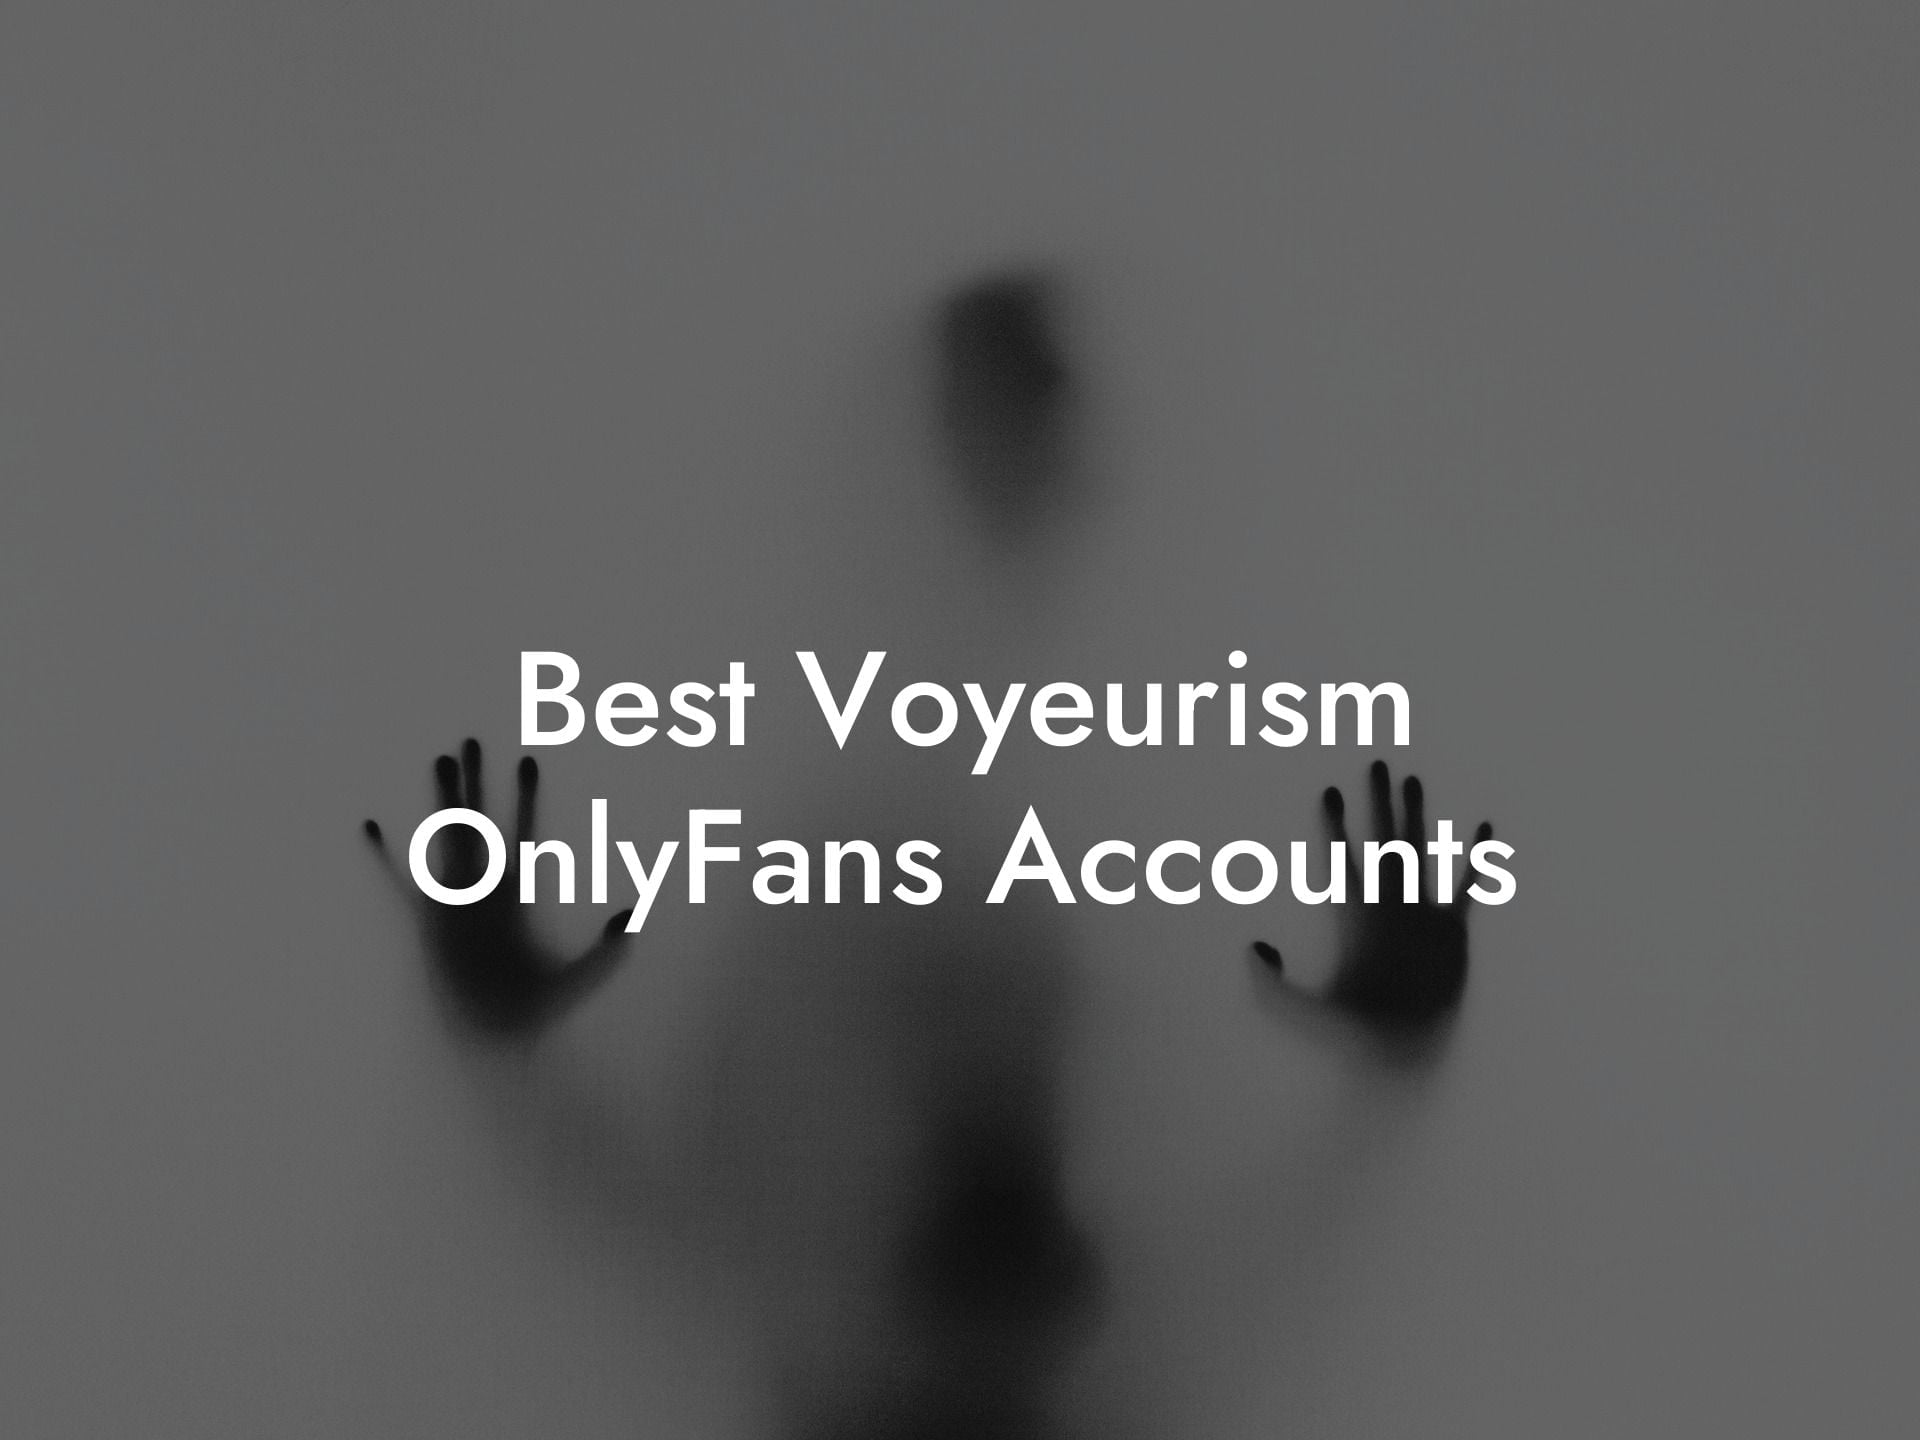 Best Voyeurism OnlyFans Accounts